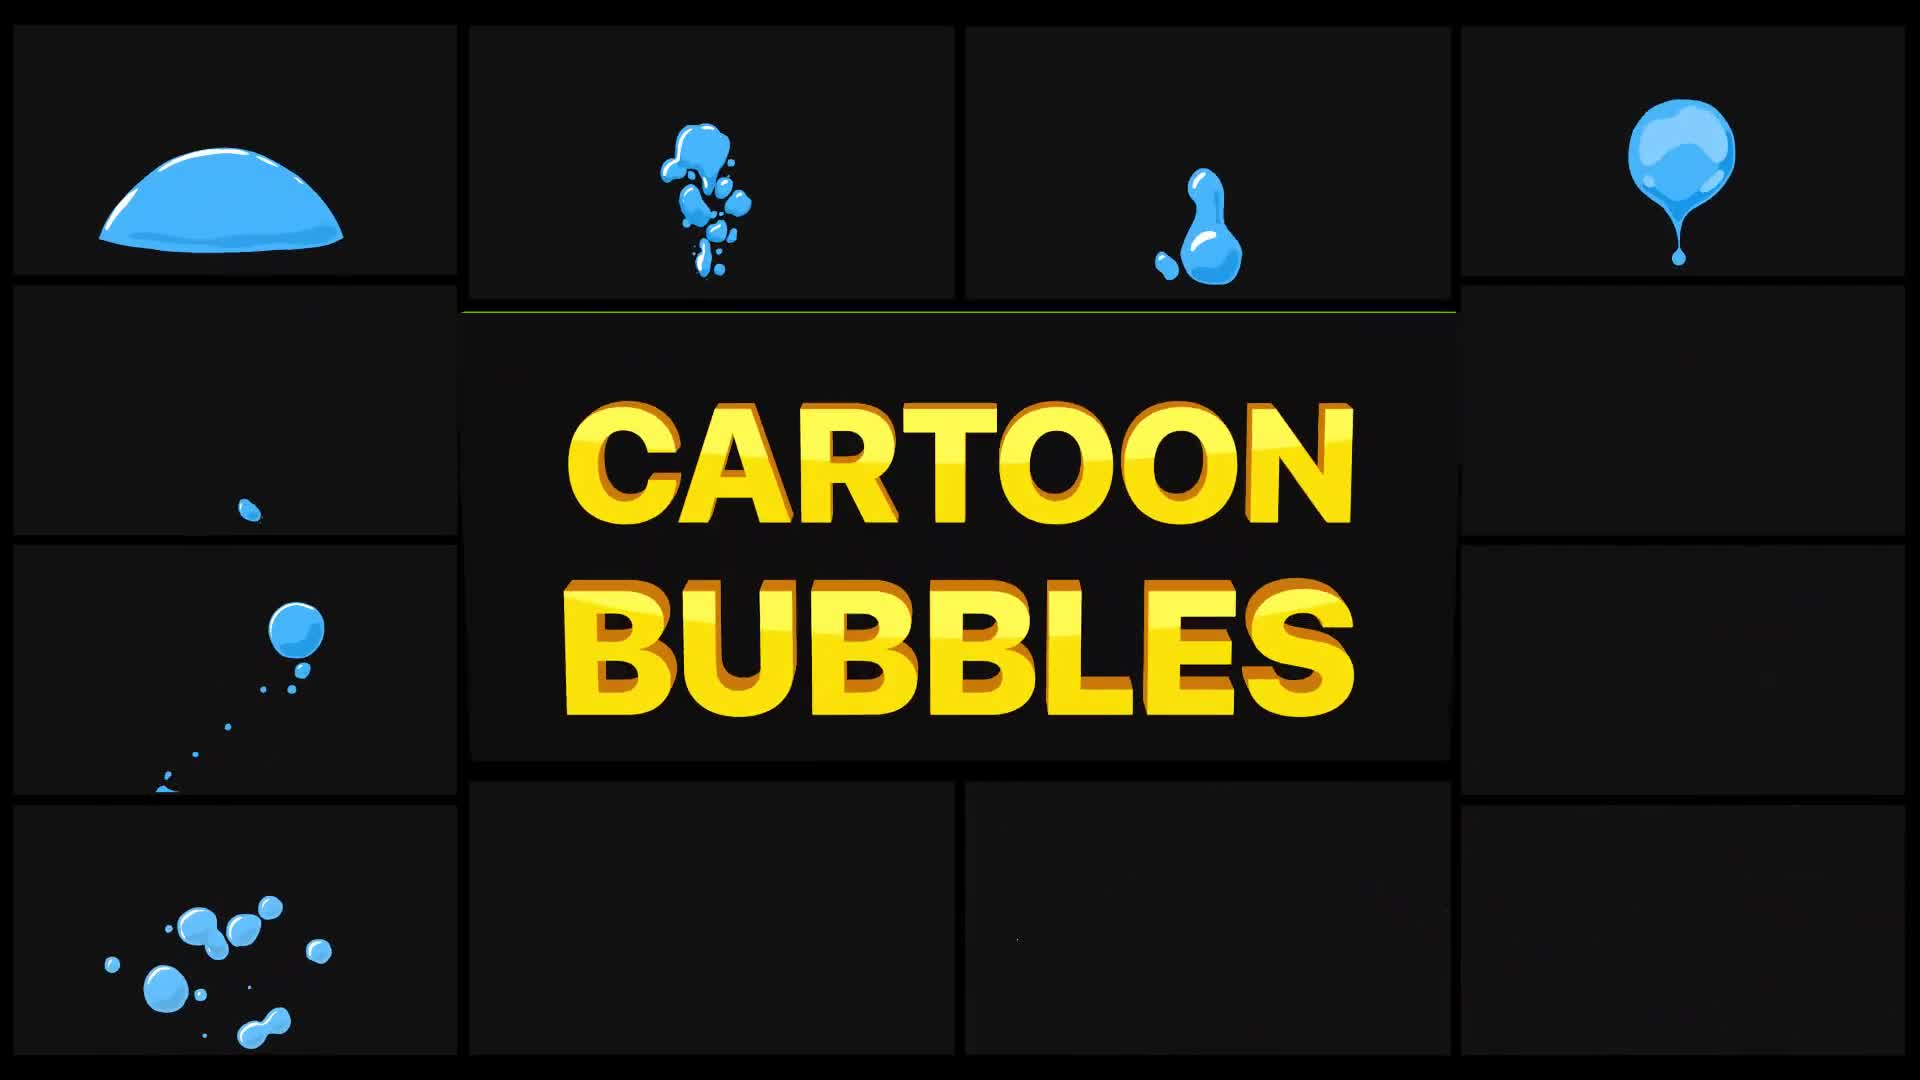 Cartoon Bubbles | Premiere Pro MOGRT Videohive 31349360 Premiere Pro Image 1